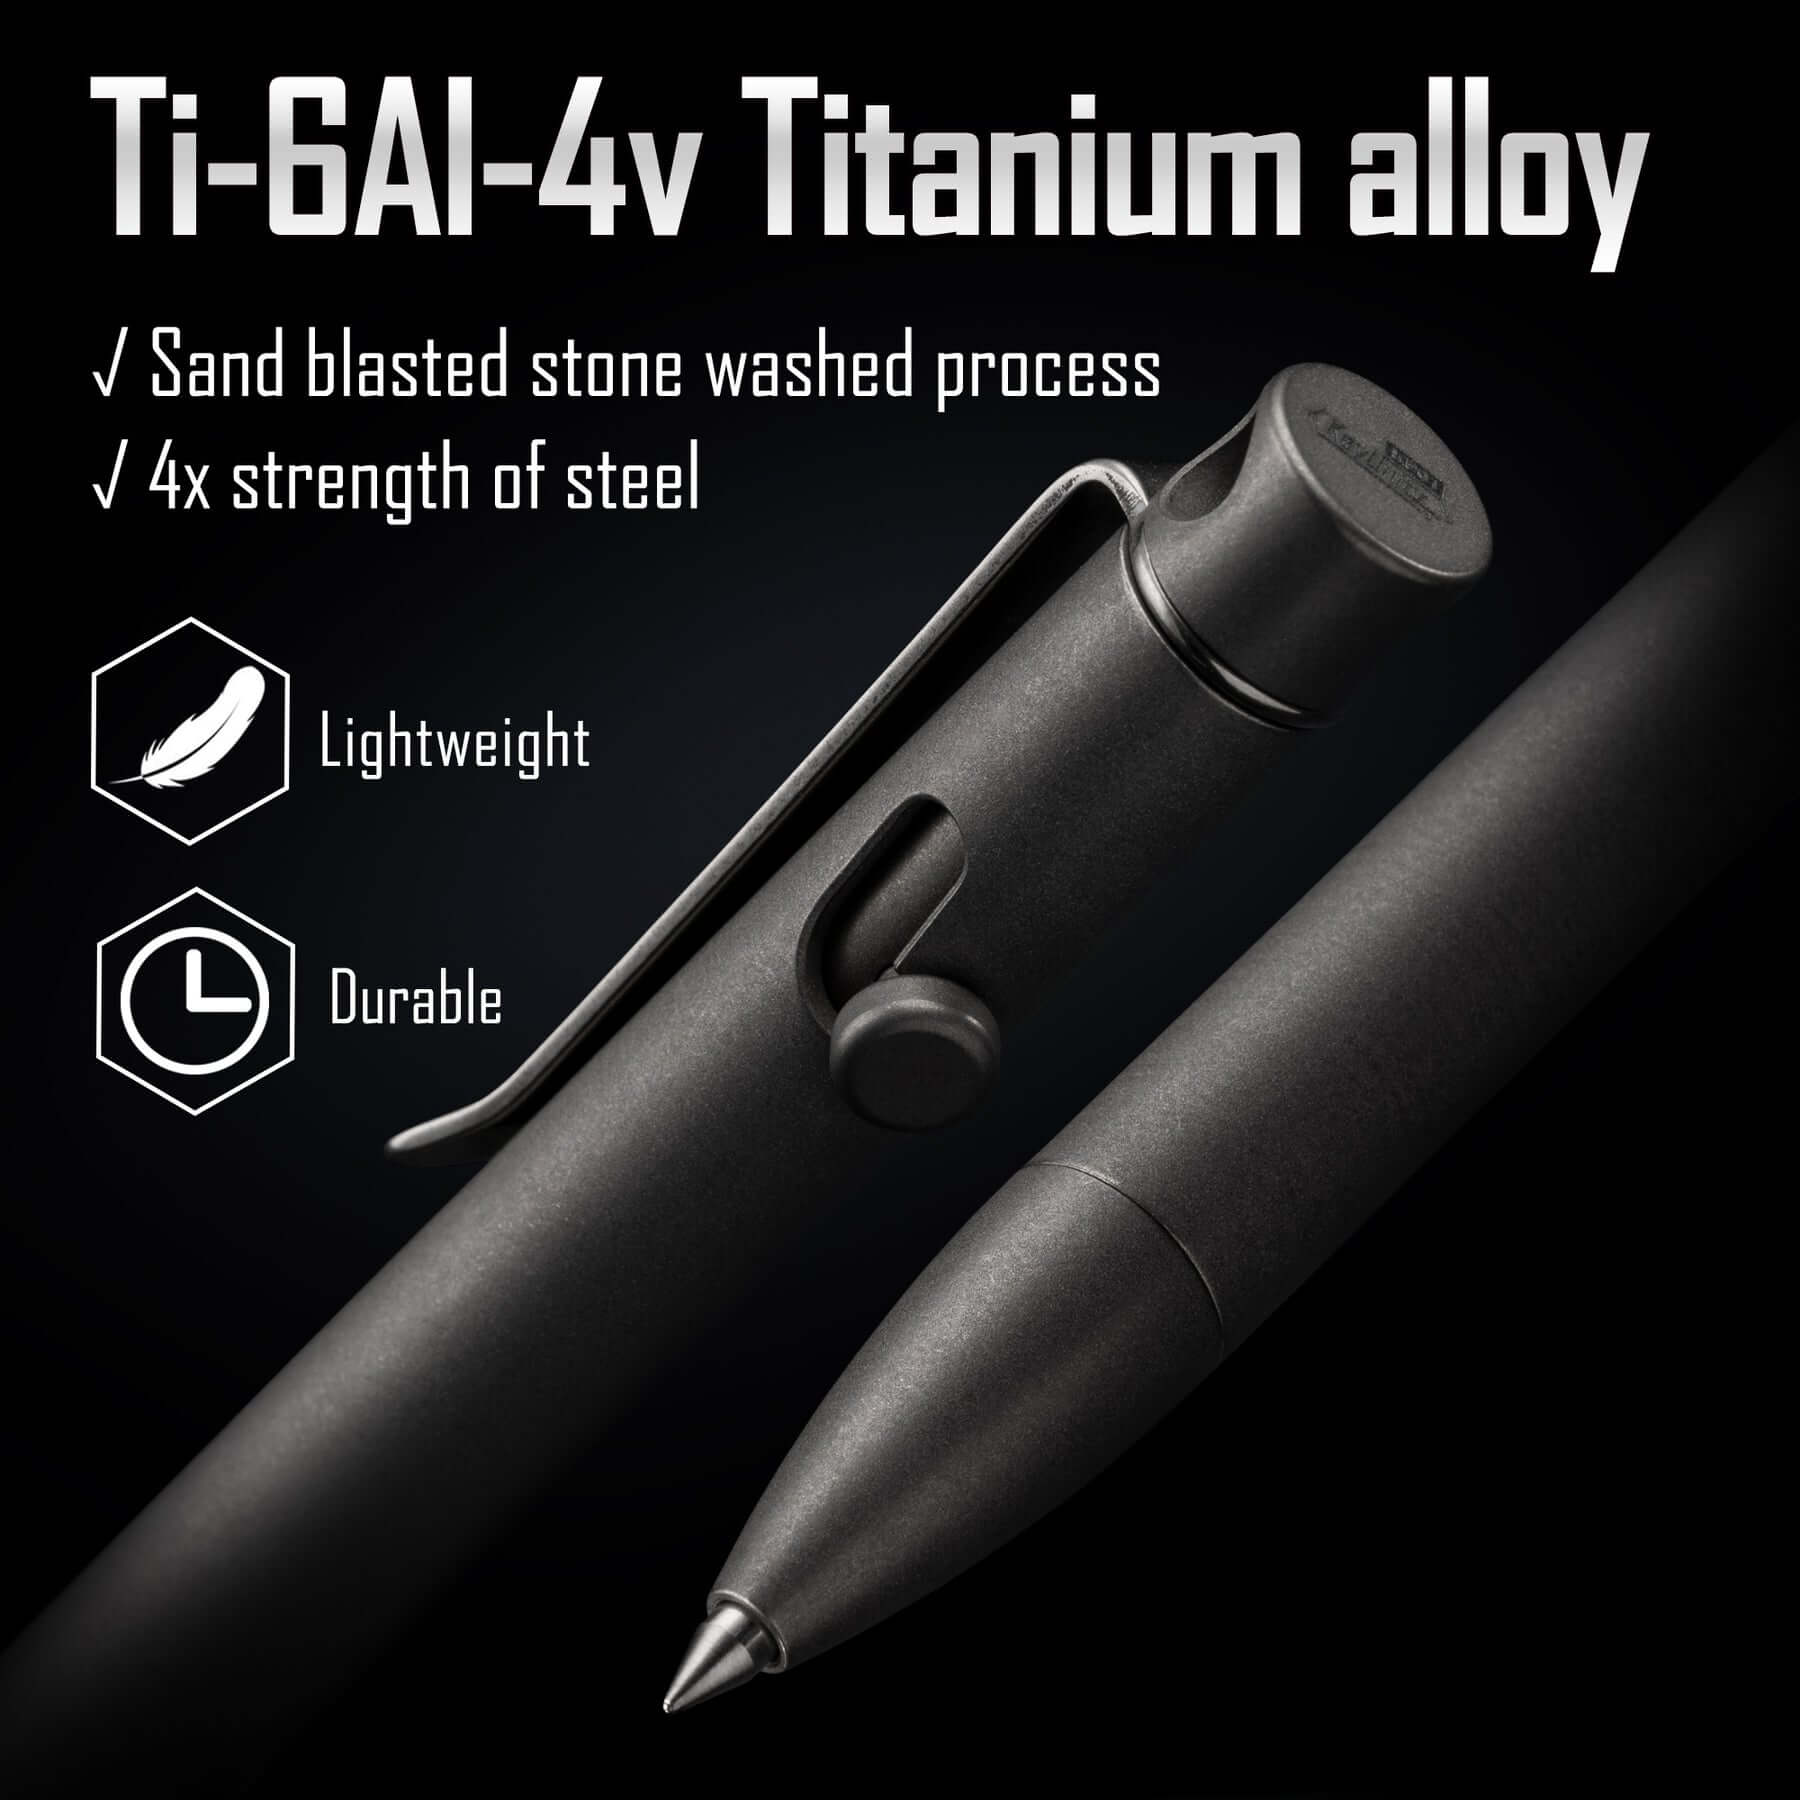 KP01 Titanium Alloy Bolt Action Pen